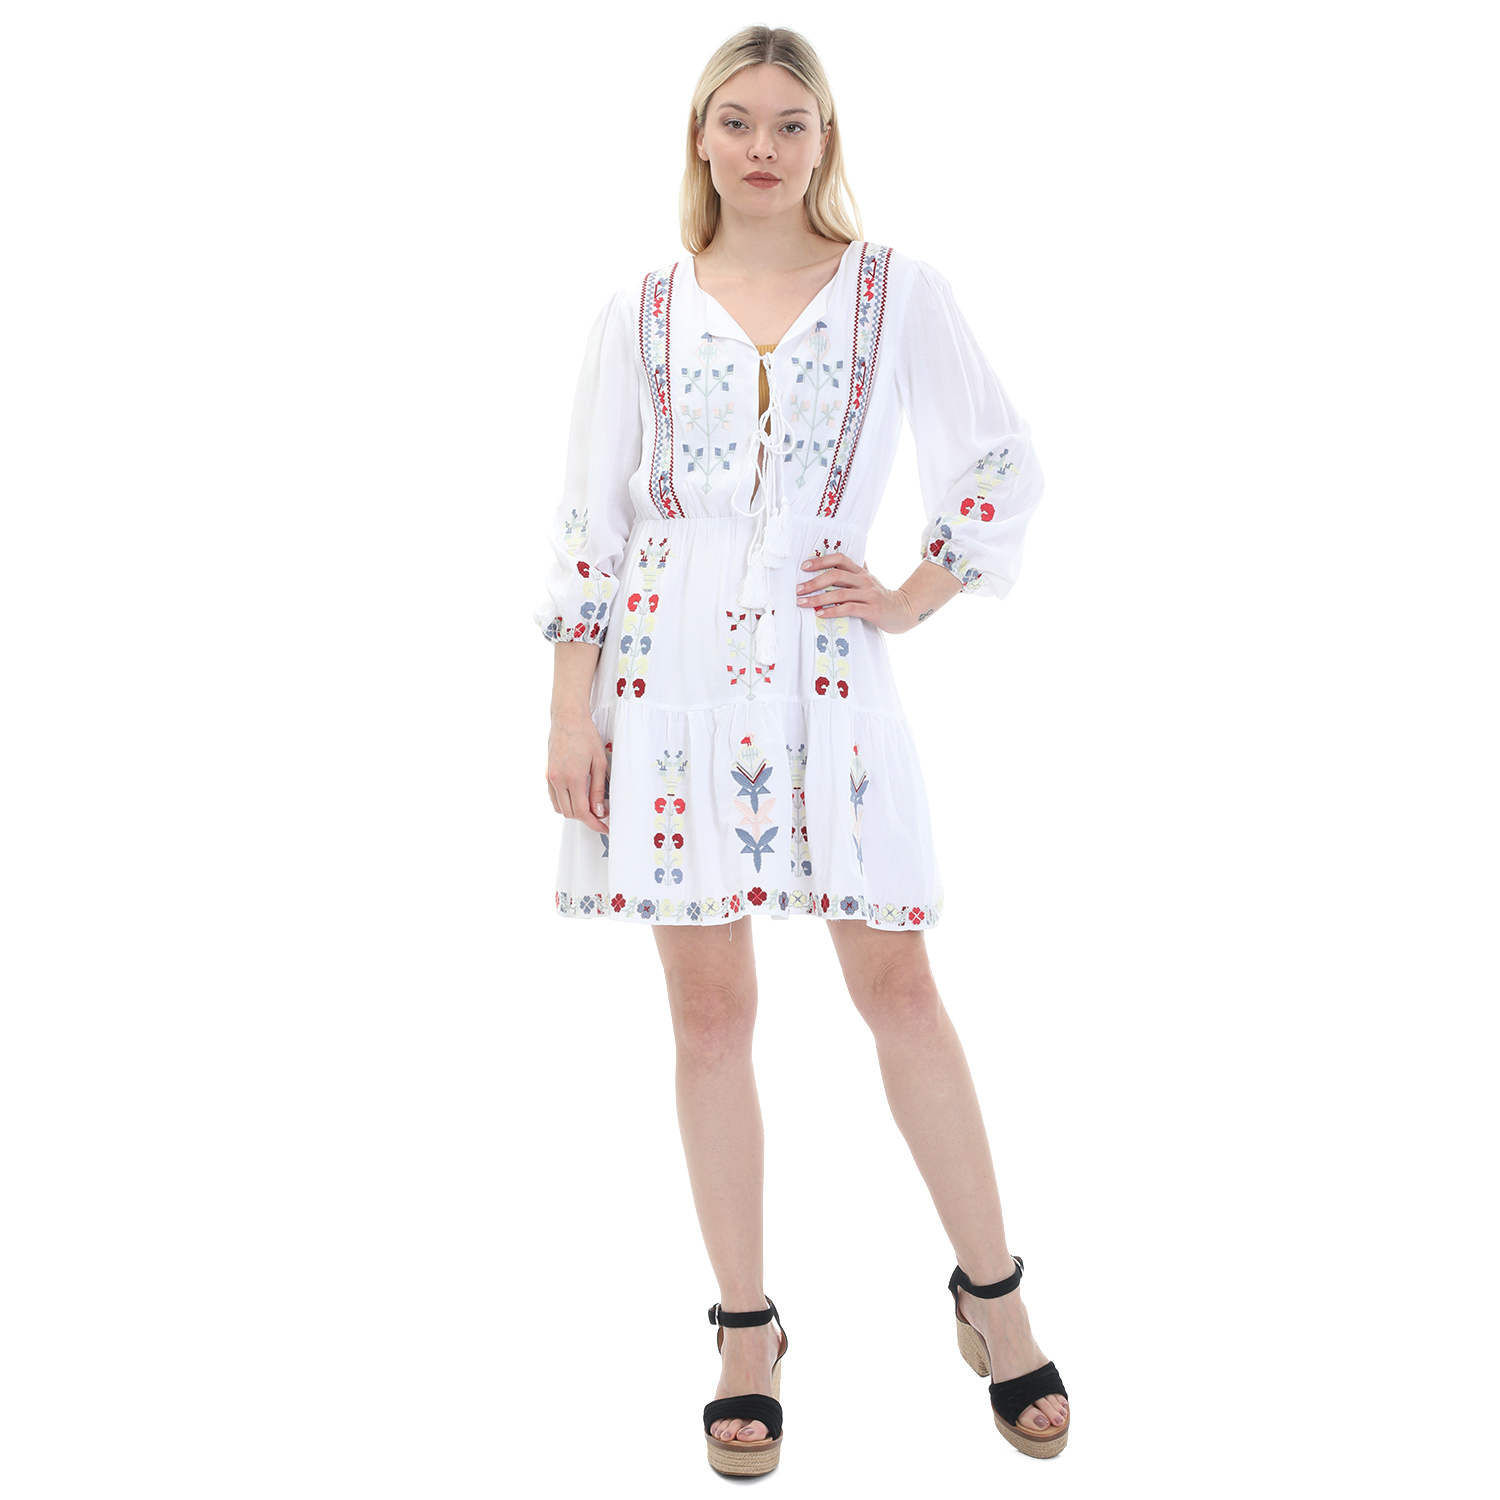 Γυναικεία/Ρούχα/Φορέματα/Μίνι BY MALINA - Γυναικείο mini φόρεμα BY MALINA ELENA DRESS λευκό